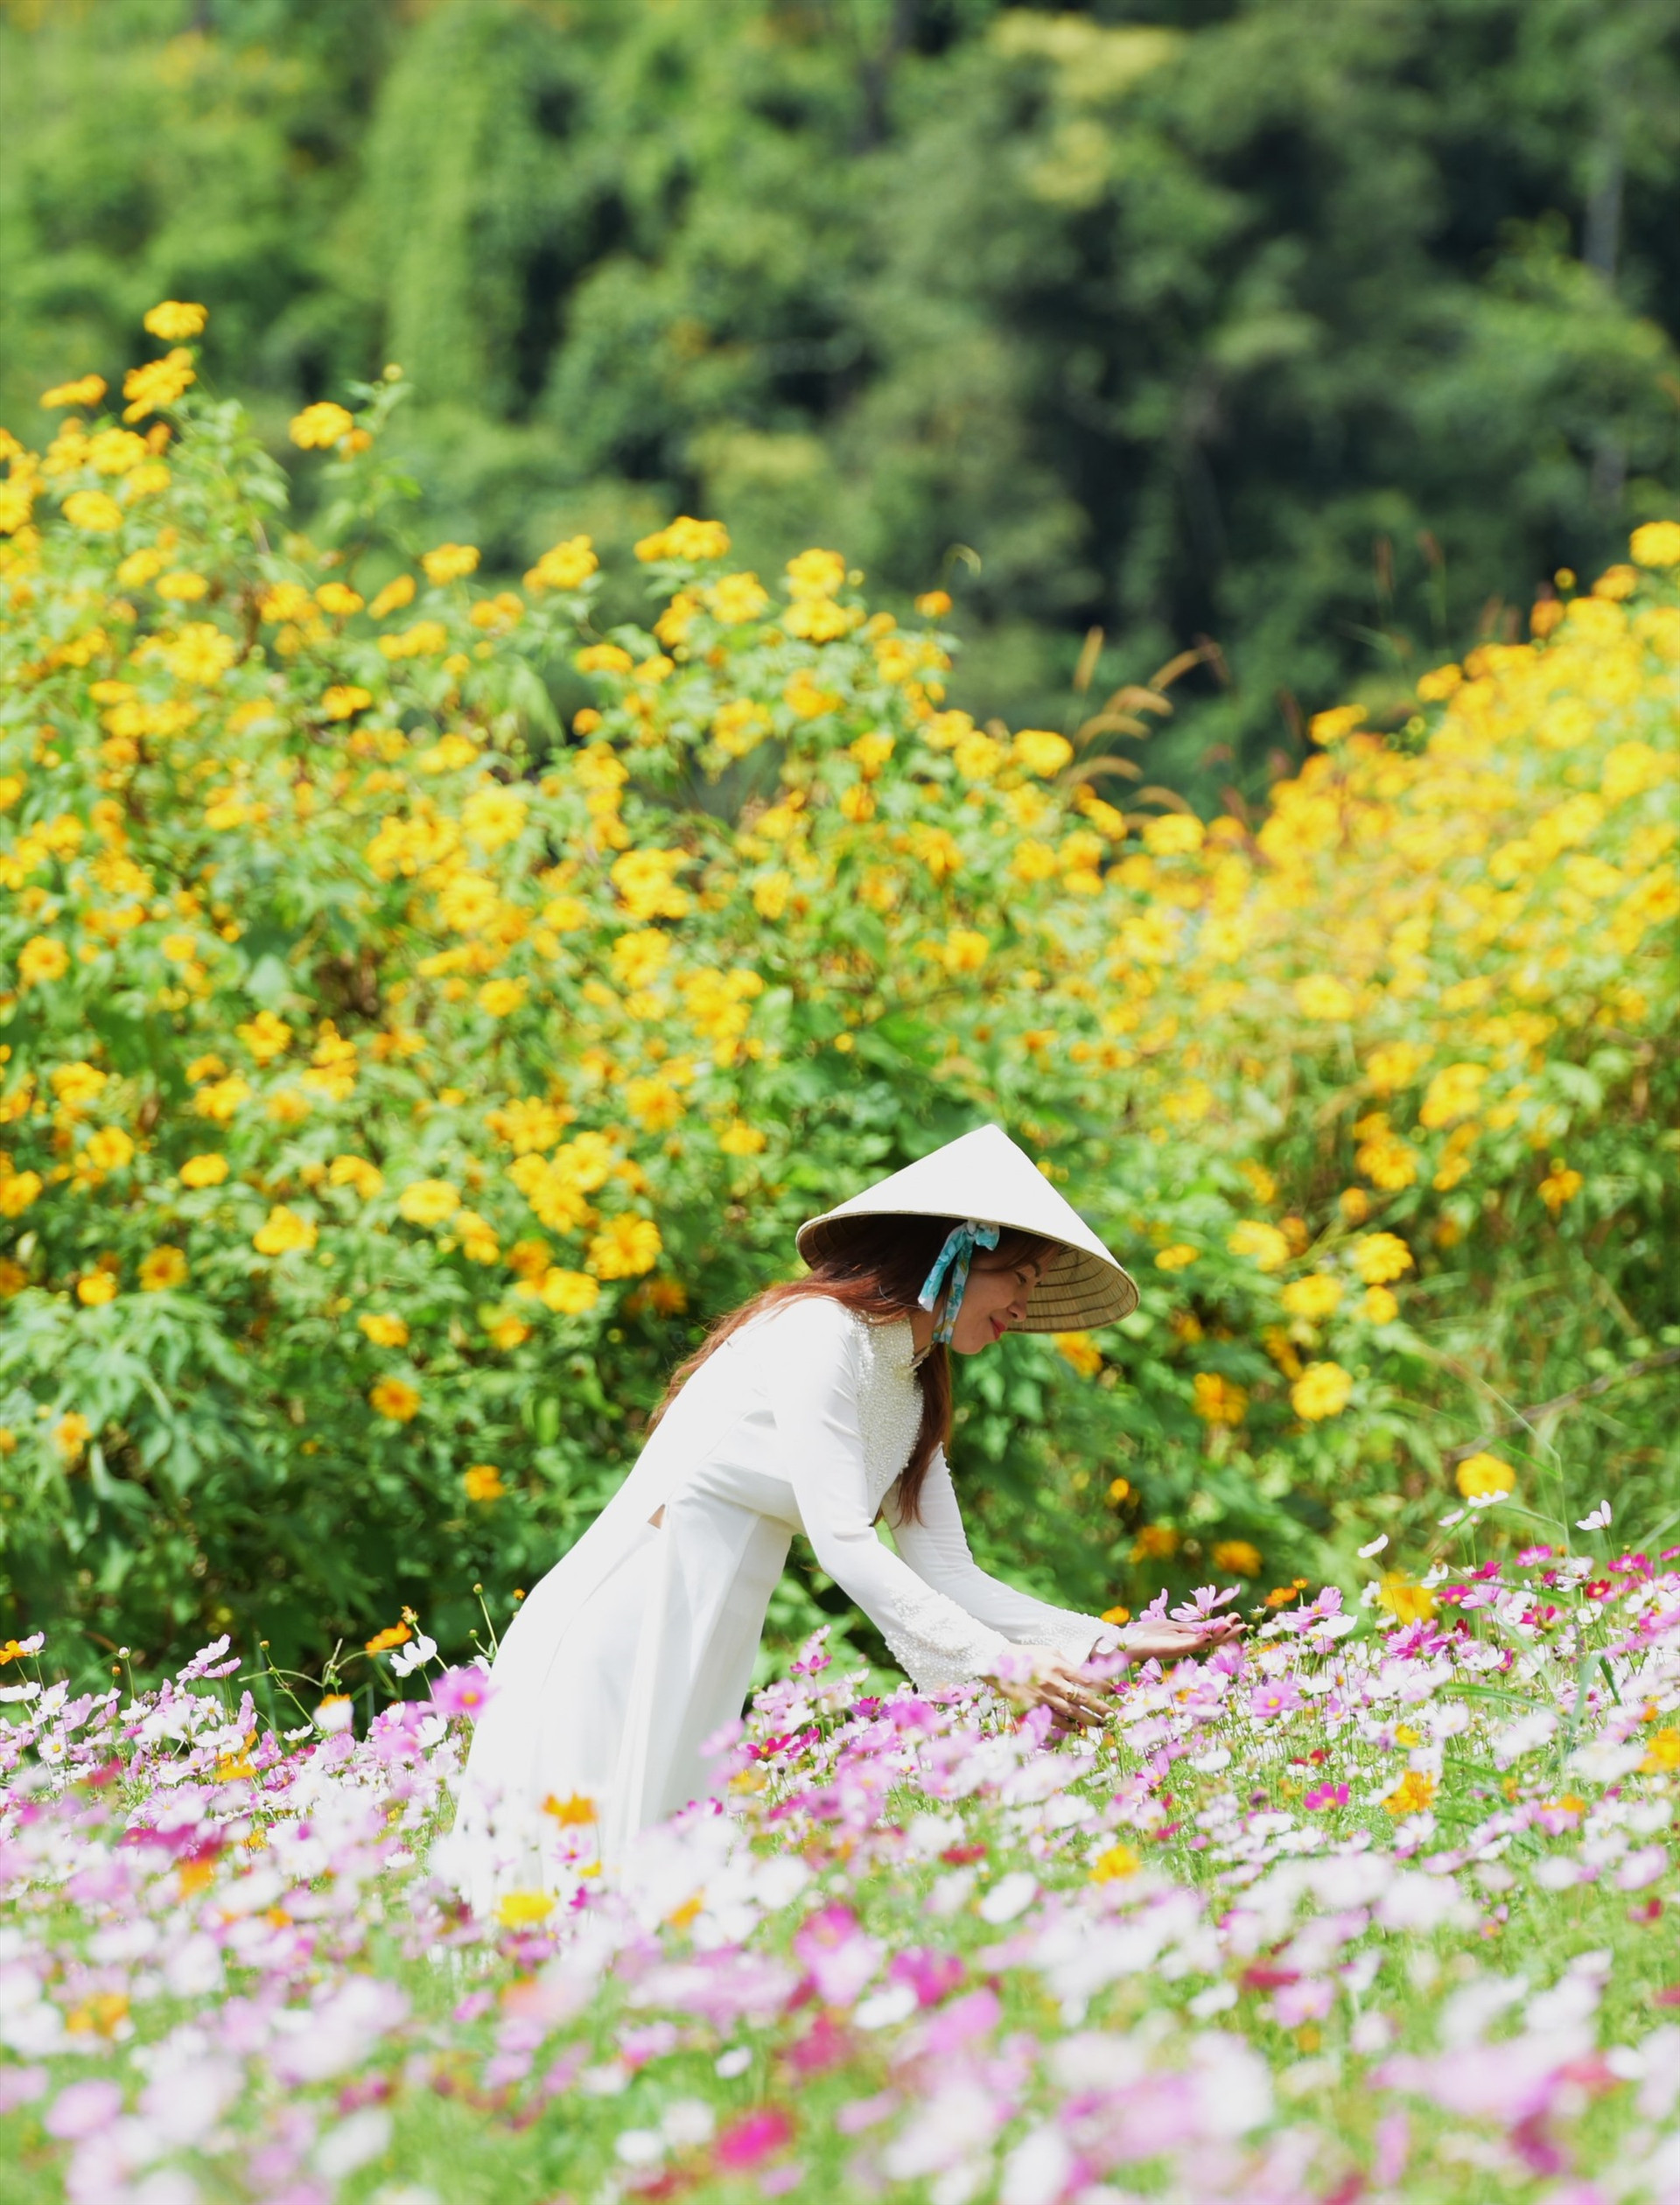 Theo người dân địa phương năm nay mưa thuận, gió hòa nên hoa dã quỳ ở Chư Đang Ya phát triển tươi tốt. Hoa dã quỳ tượng trưng cho sức sống mãnh liệt của Tây Nguyên…